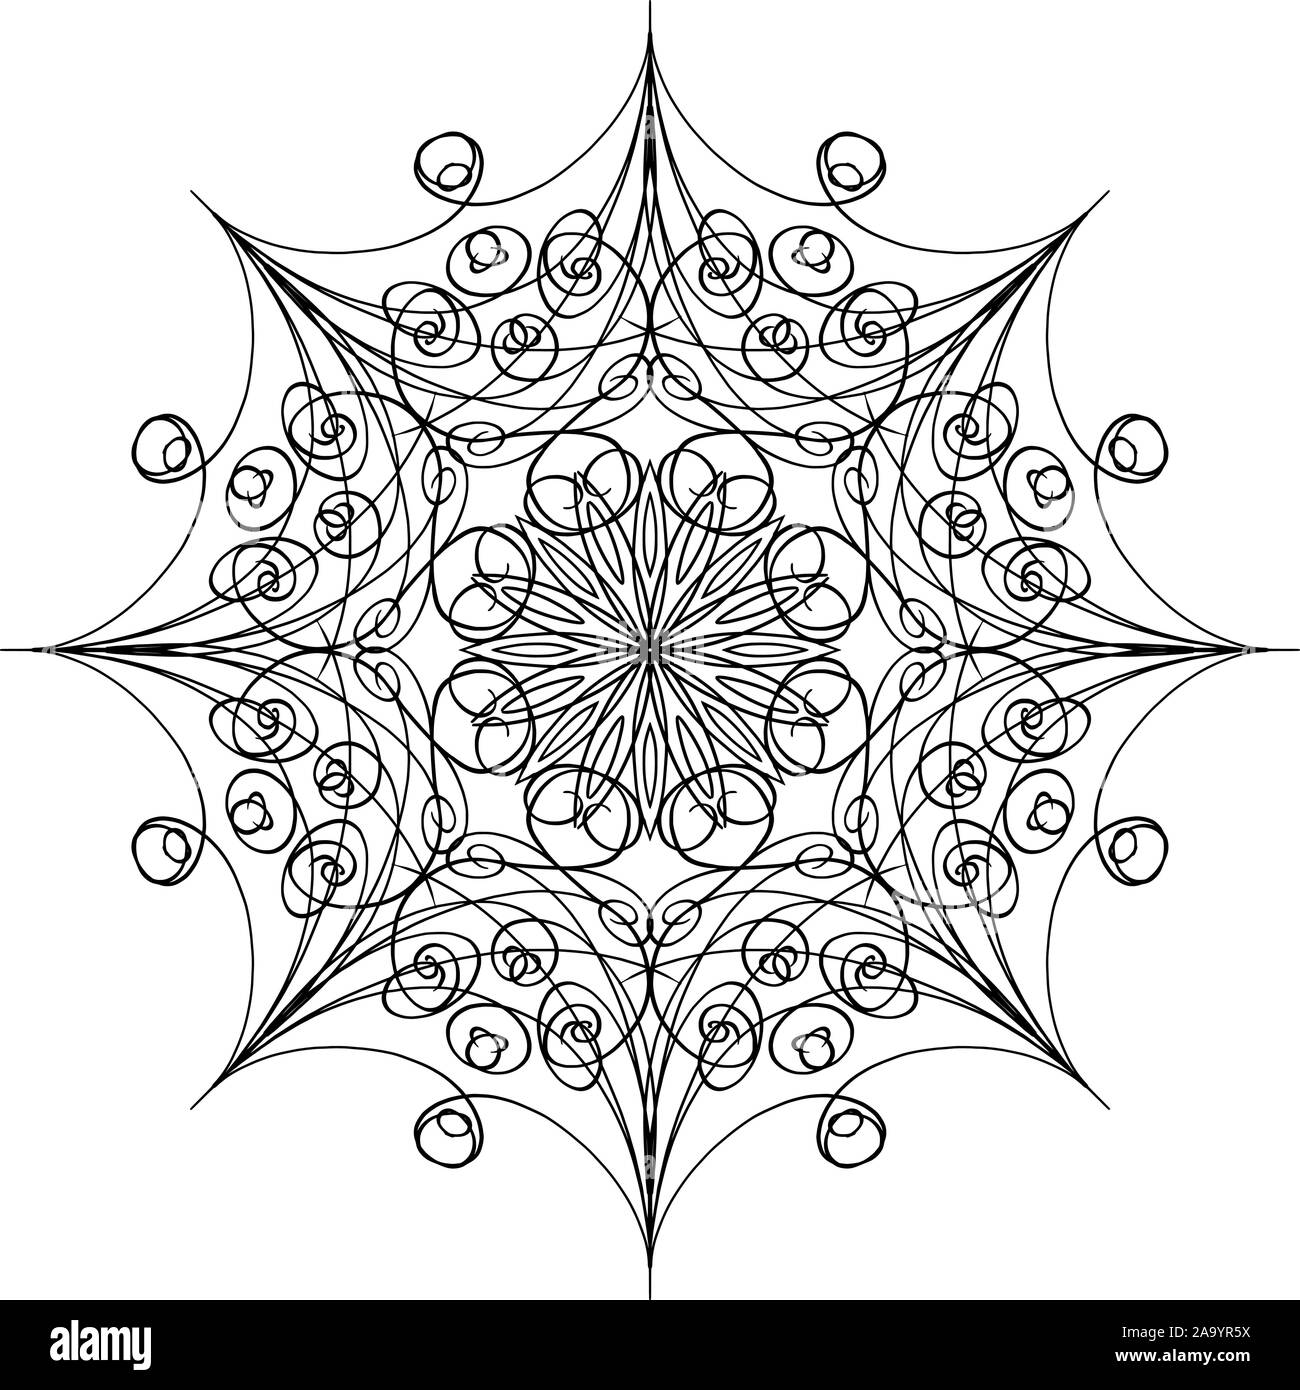 Vector penna e inchiostro disegno di fiocco di neve di forma rotonda, ornamentali in graphic design in stile mandala. Illustrazione Vettoriale